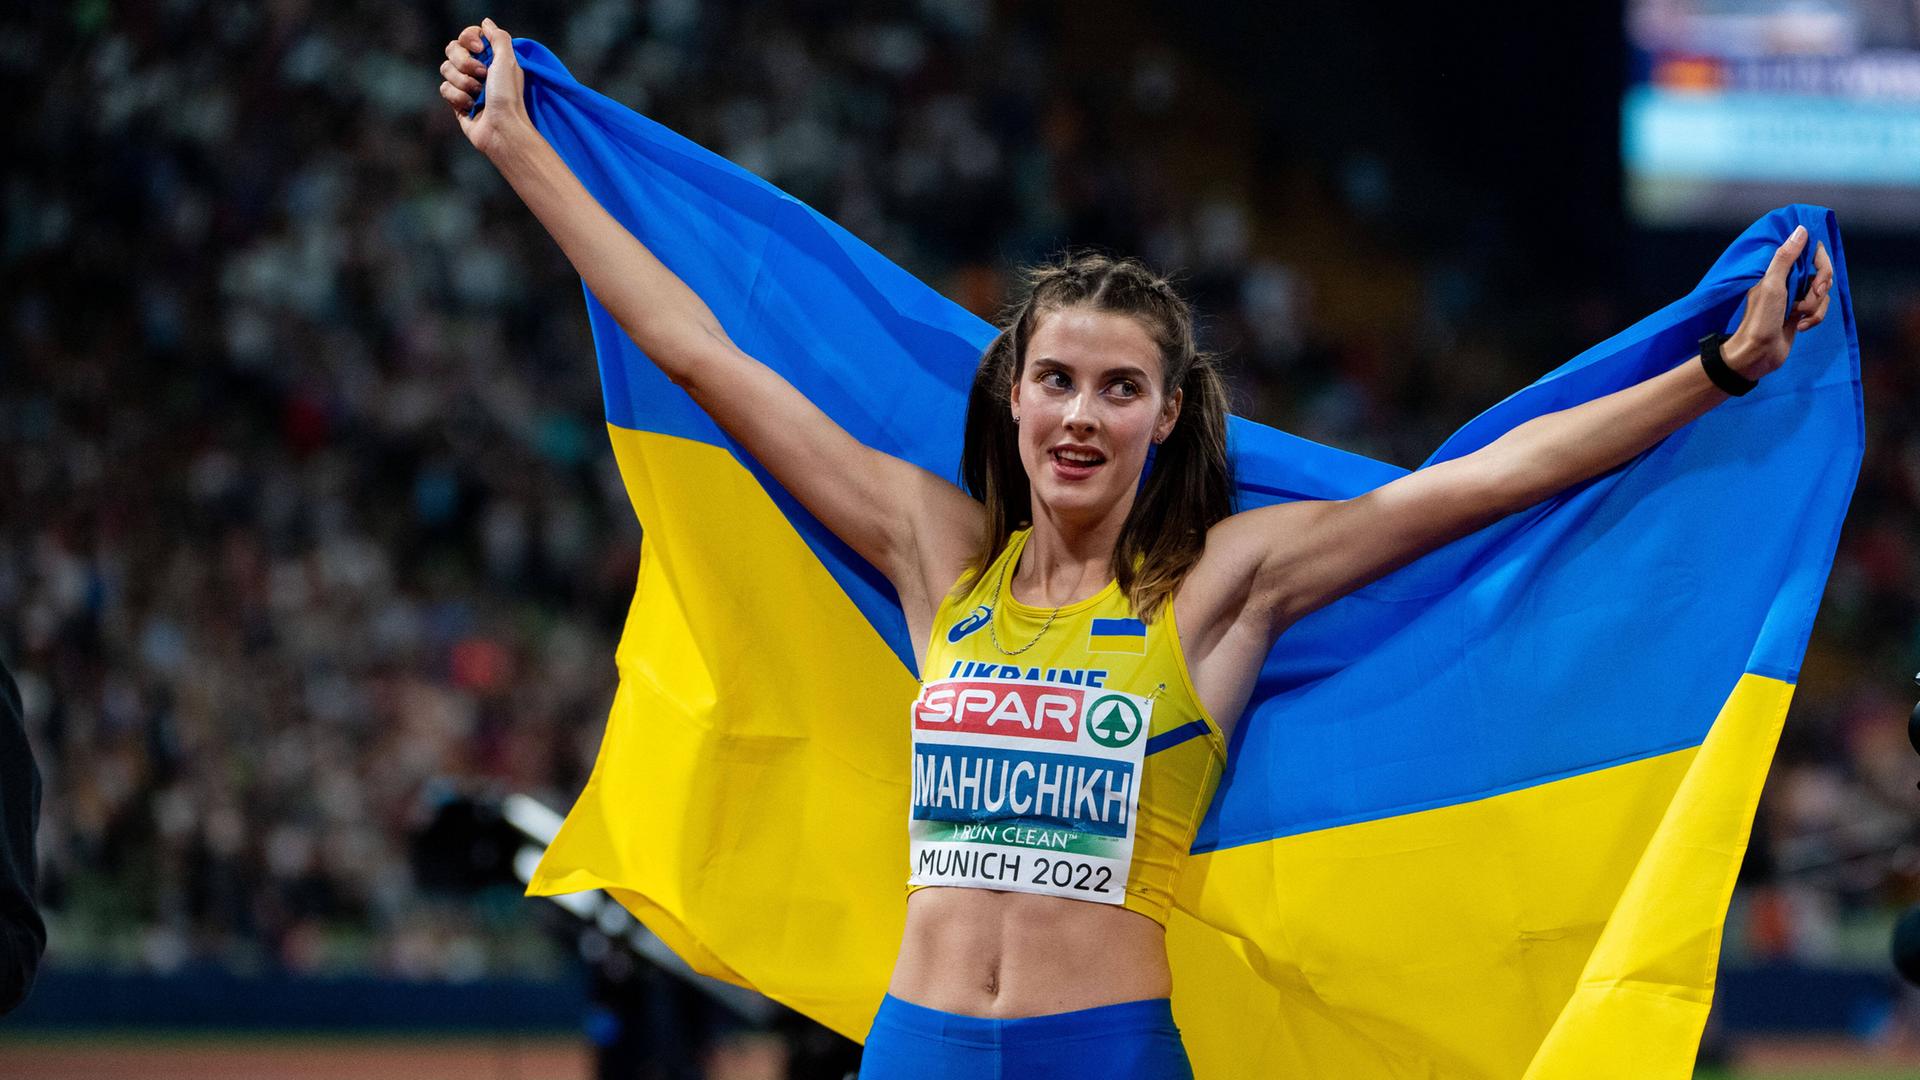 Die ukrainische Hochspringerin Jaroslawa Mahutschich feiert ihren Titelgewinn bei den Europameisterschaften in München.